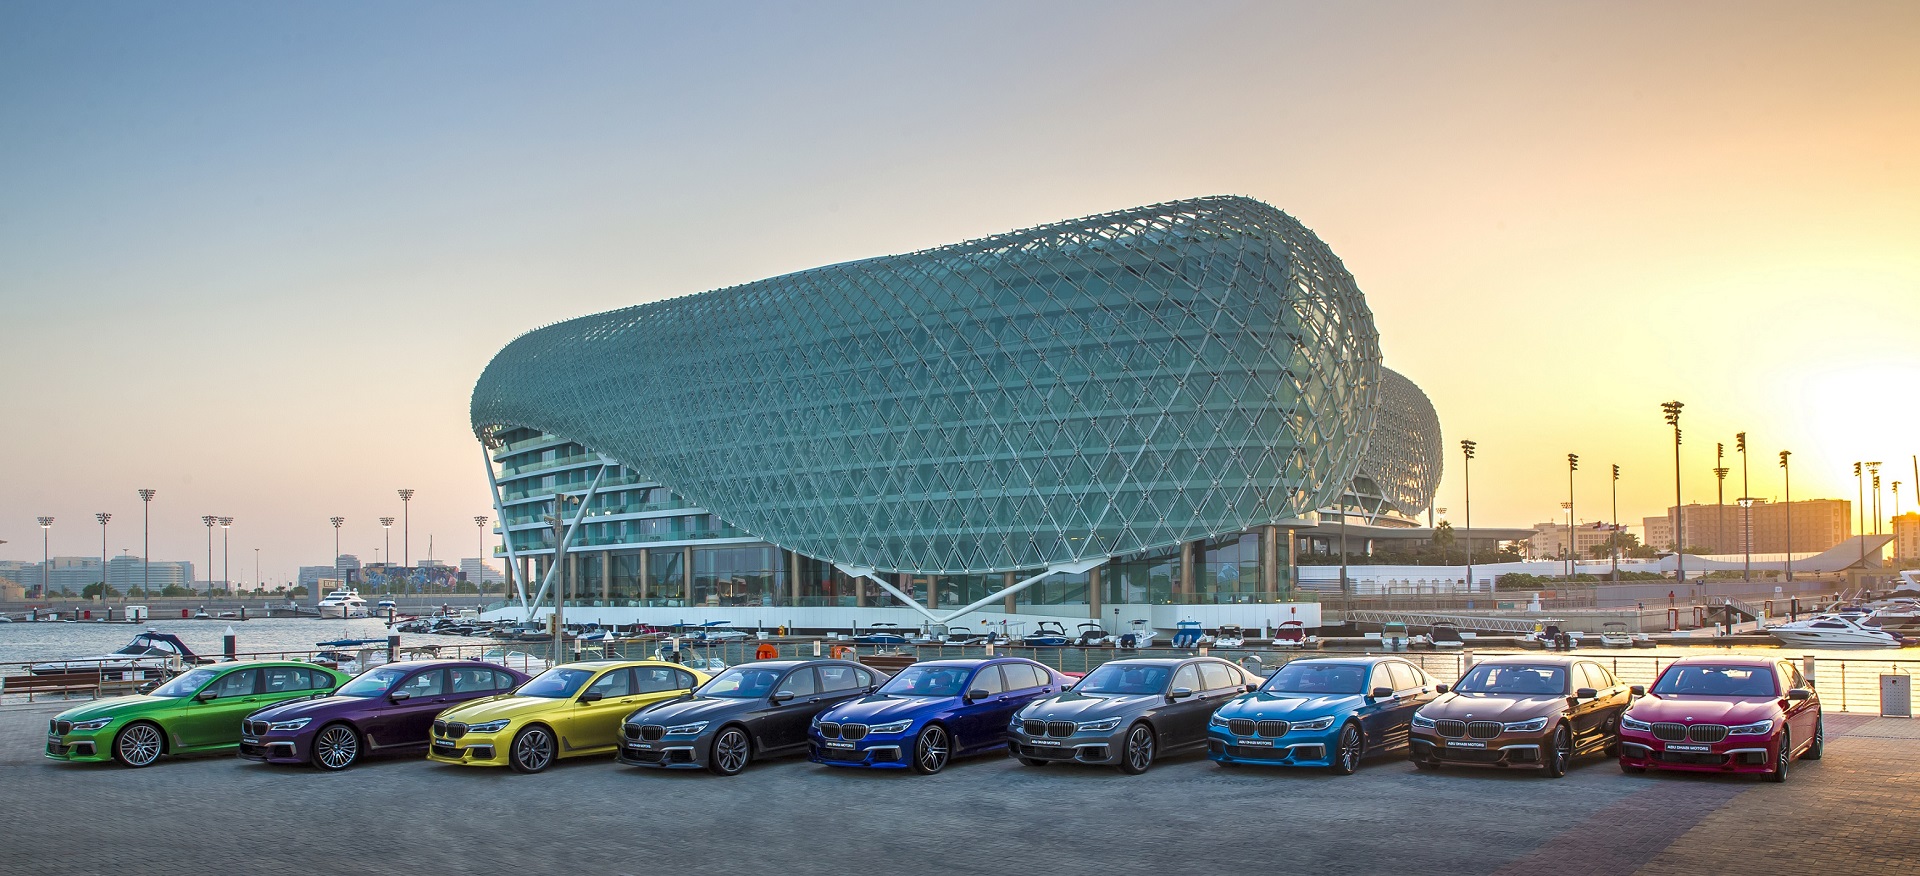 بالفيديو... أكثر من مجرّد لون: شركة أبوظبي موتورز تطرح مجموعة محدودة جداً من سيارات BMW الفئة السابعة الفريدة من نوعها